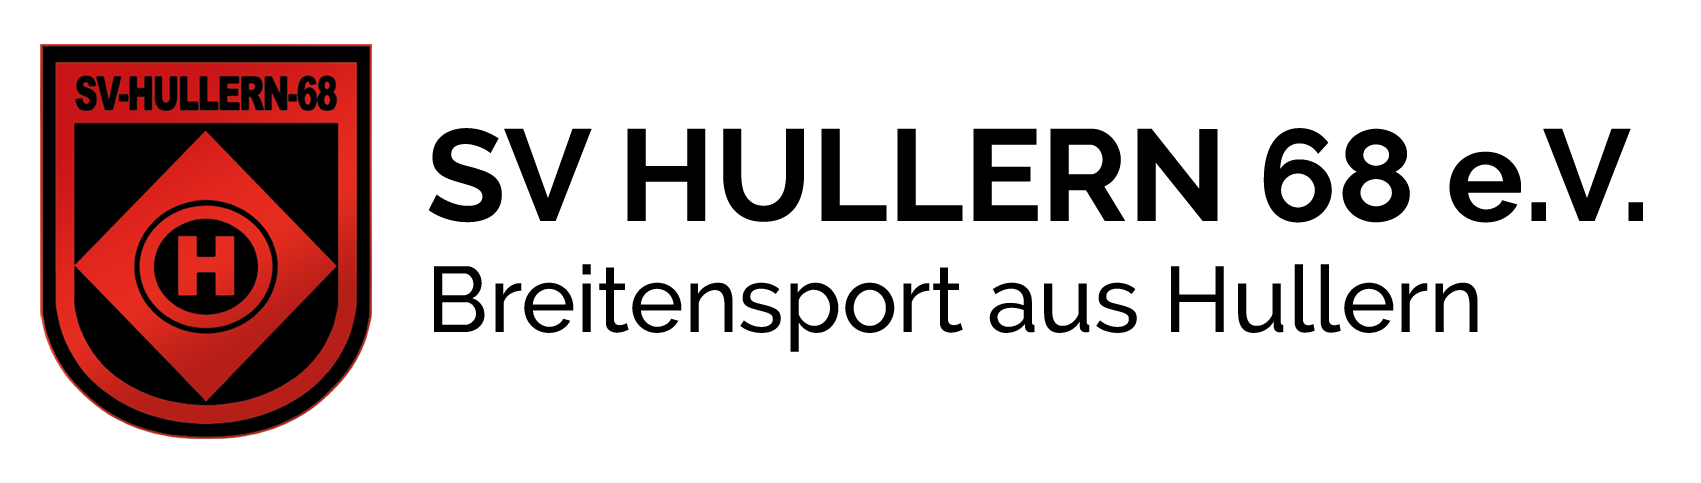 svhuller_logo